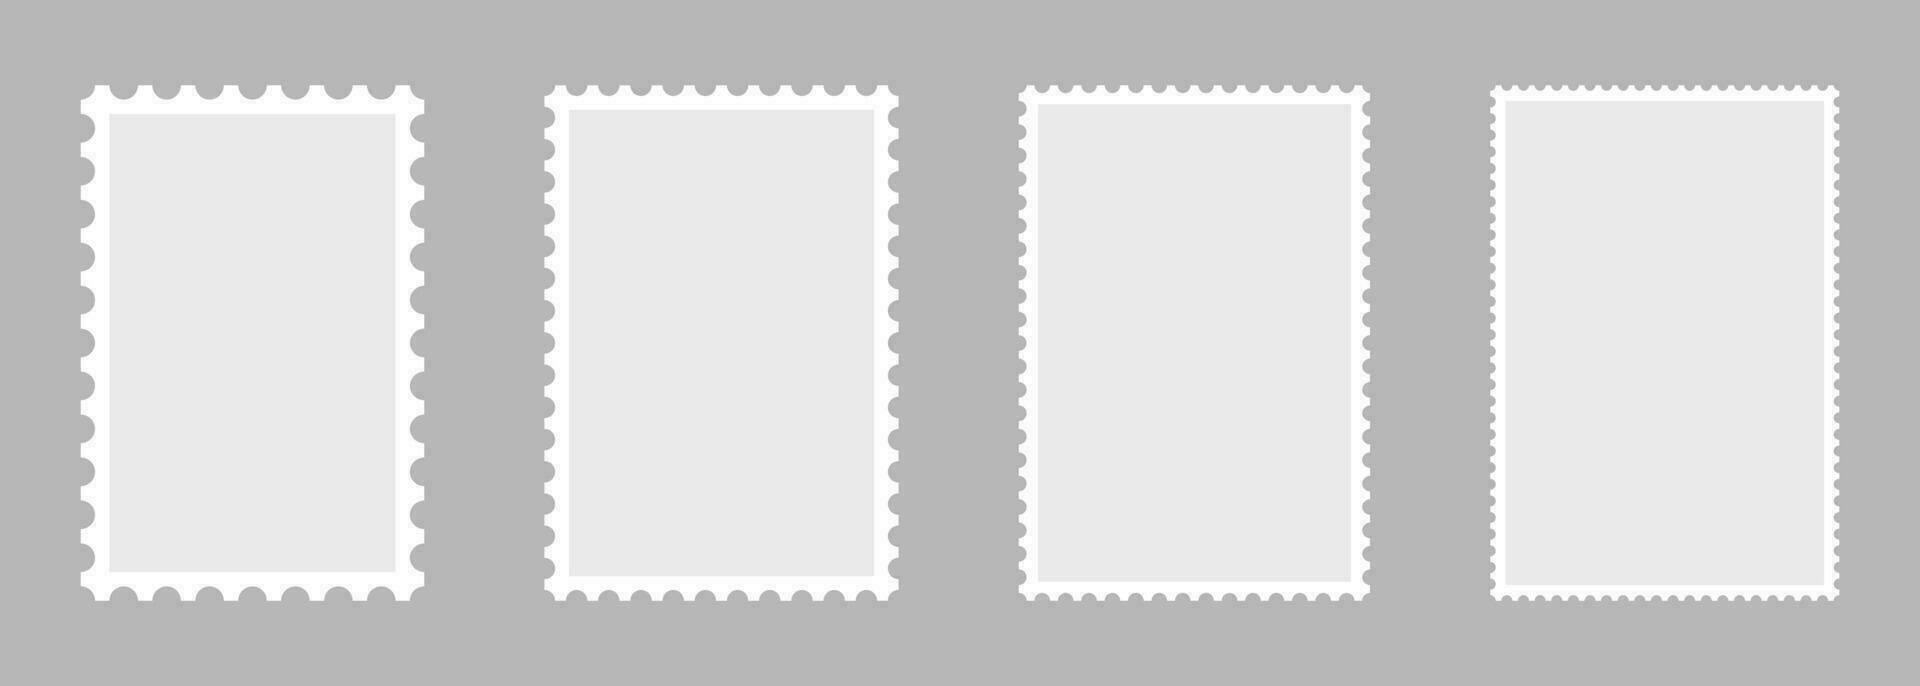 em branco conjunto do 4 postagem selos. papel carimbos postais para enviar carta isolado em cinzento fundo. vetor ilustração.